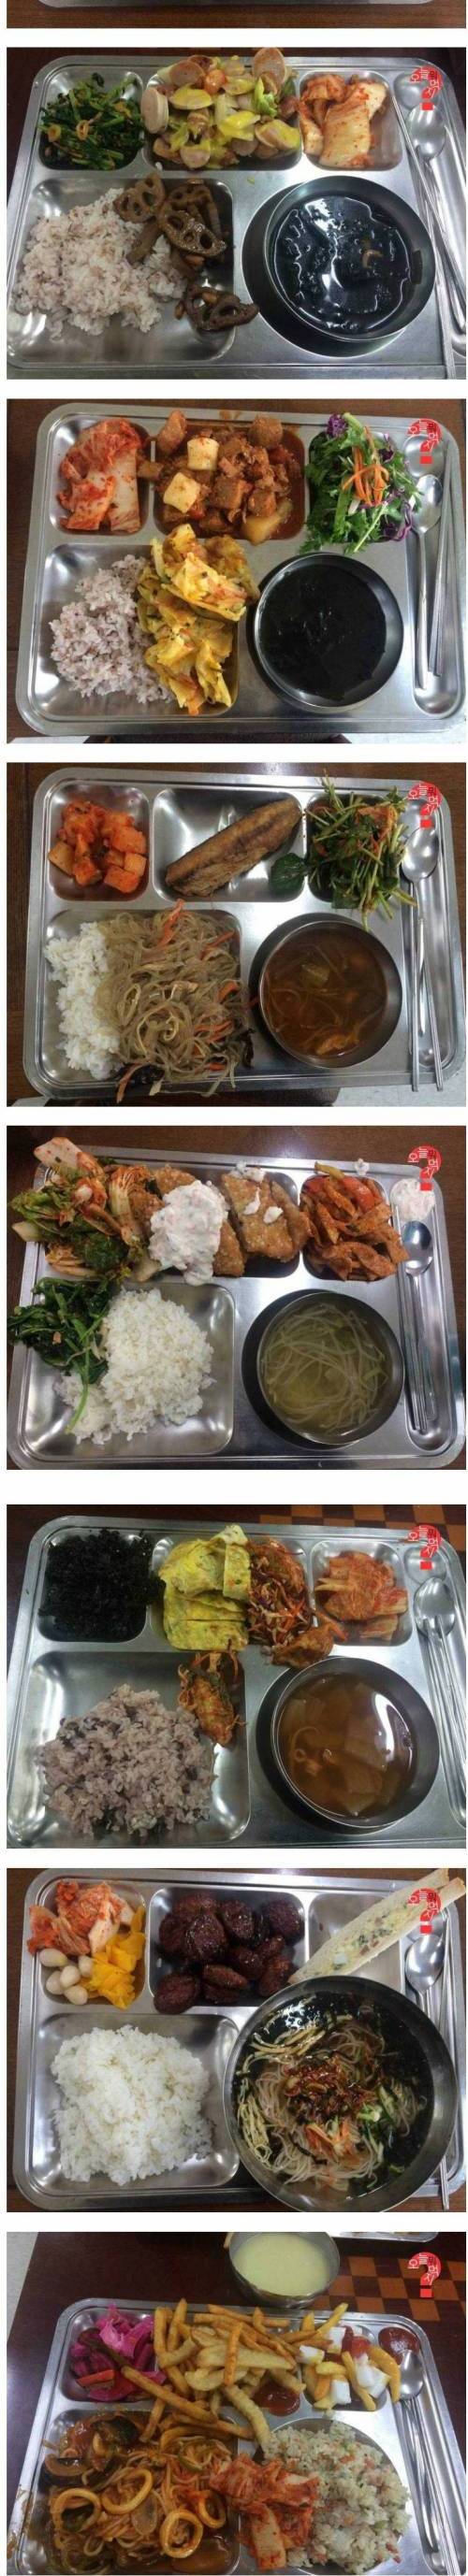 국립국어원 구내식당밥.jpg